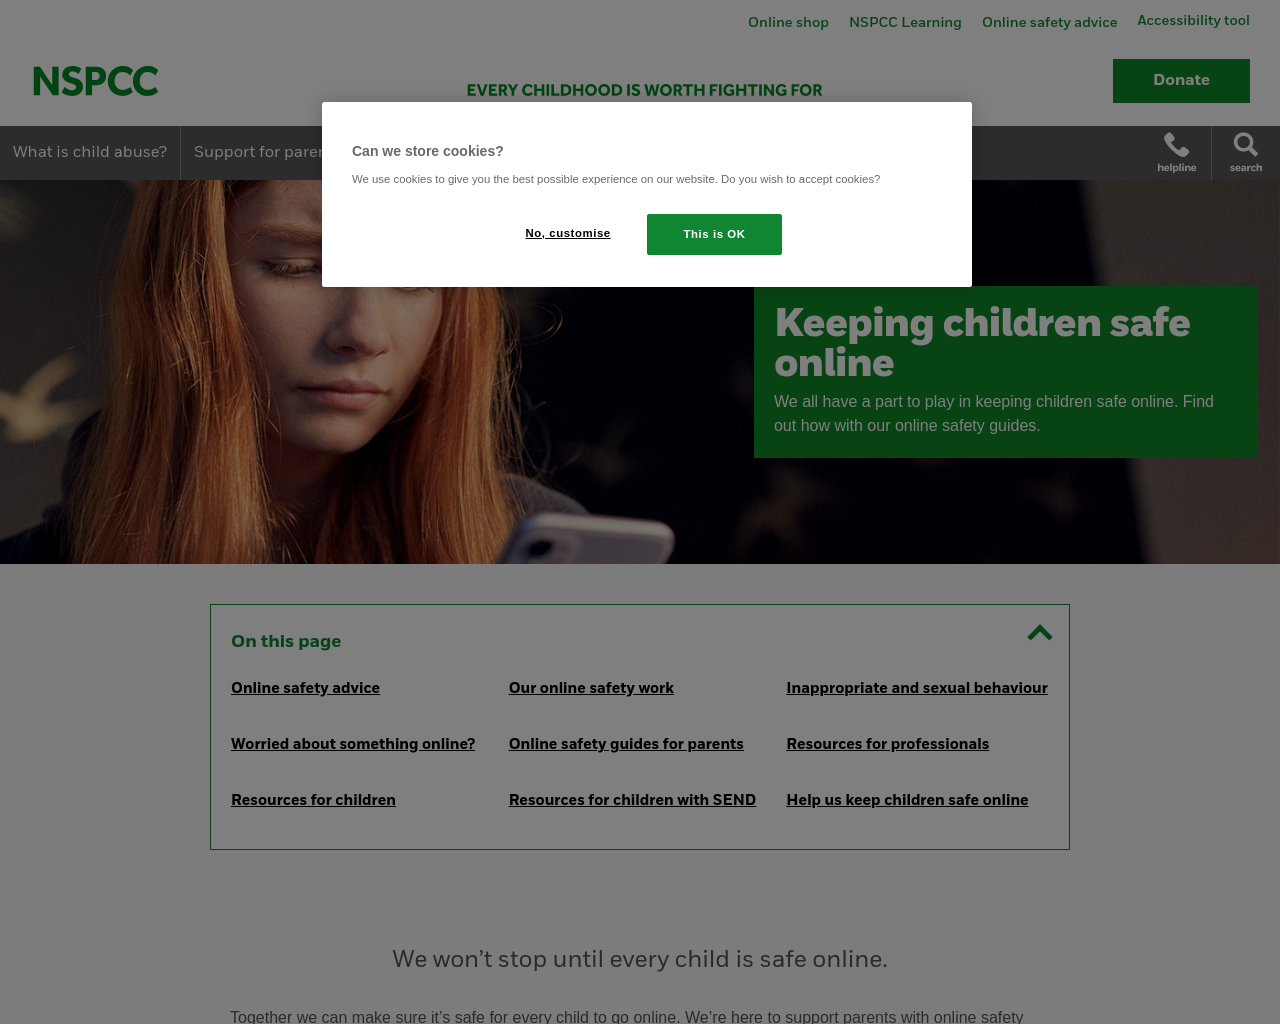 Help keep children safe online